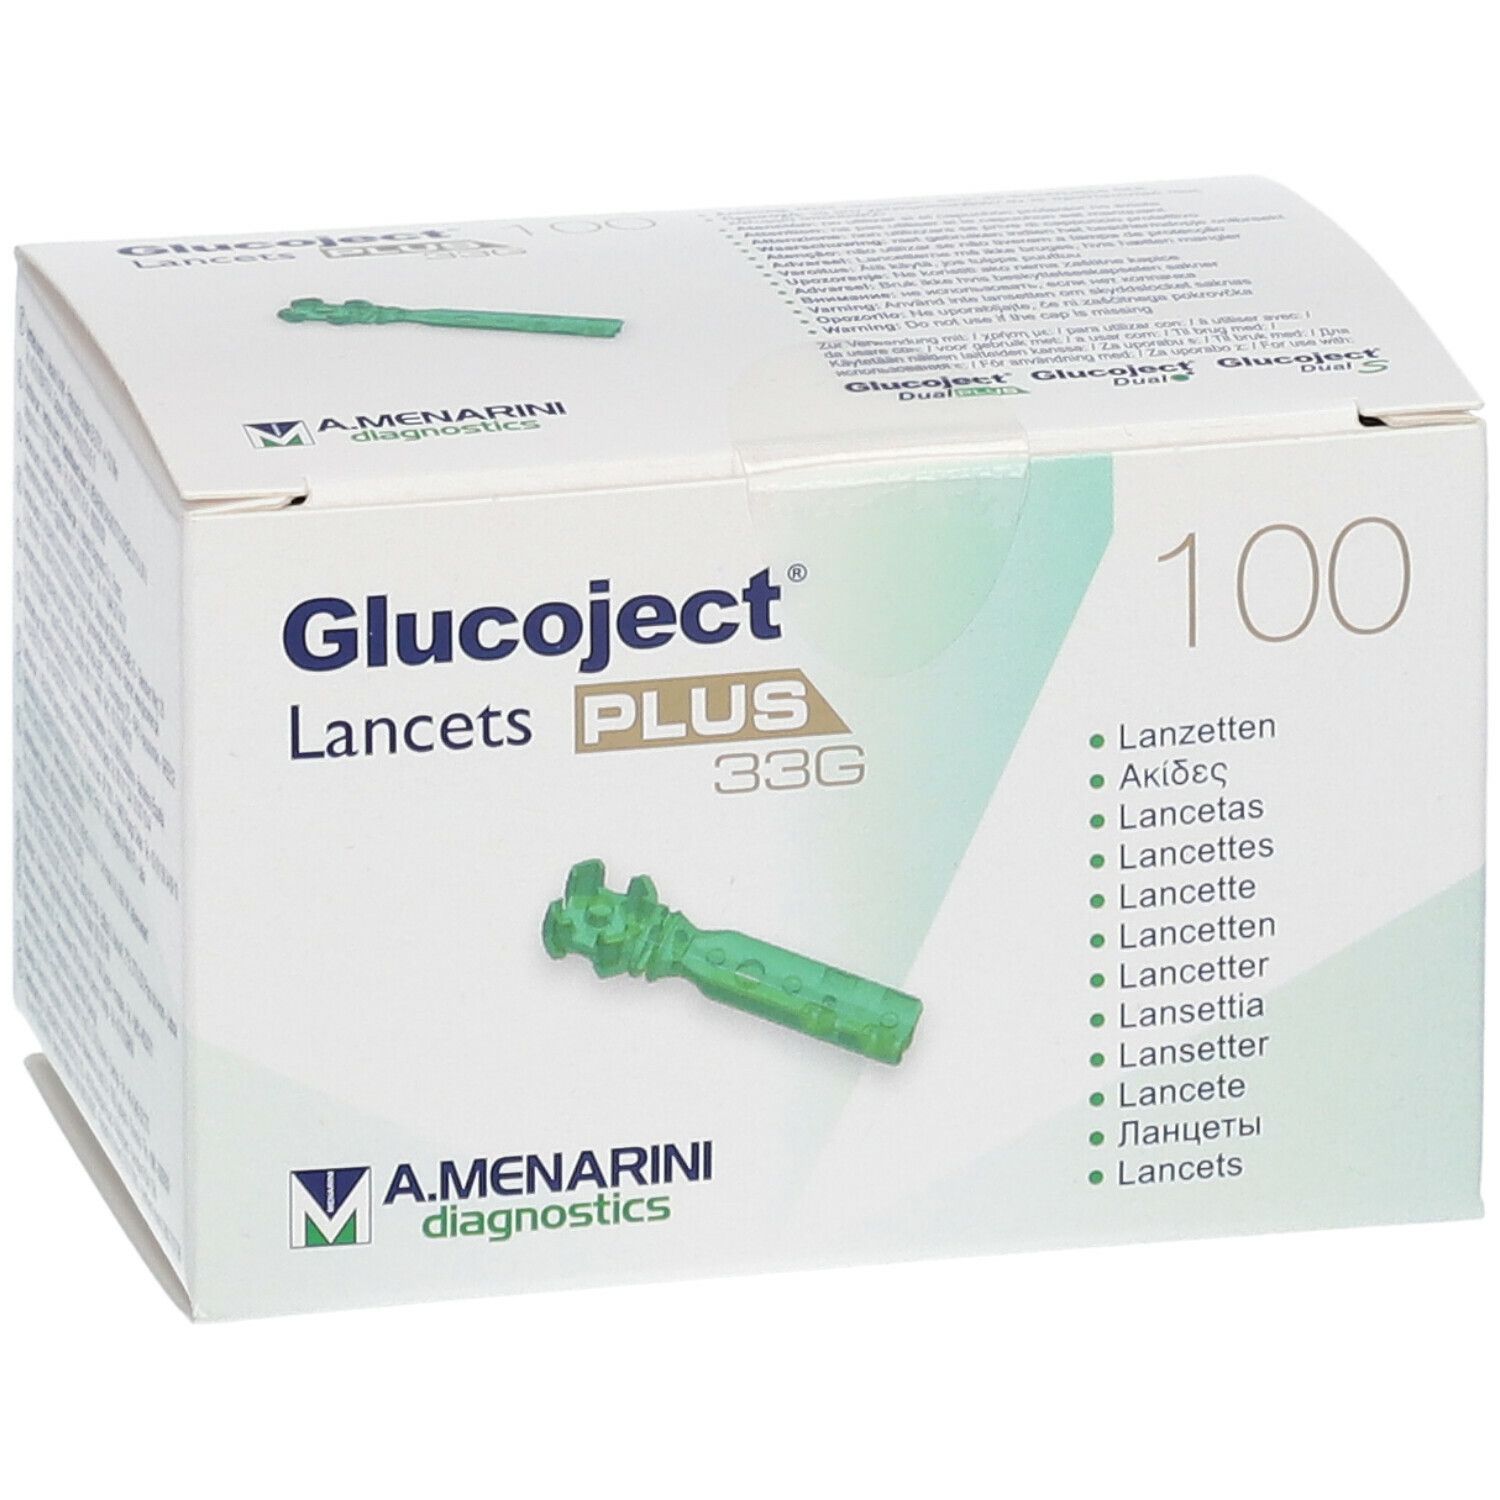 Glucoject® Lancets Plus 33G 100 Lancette